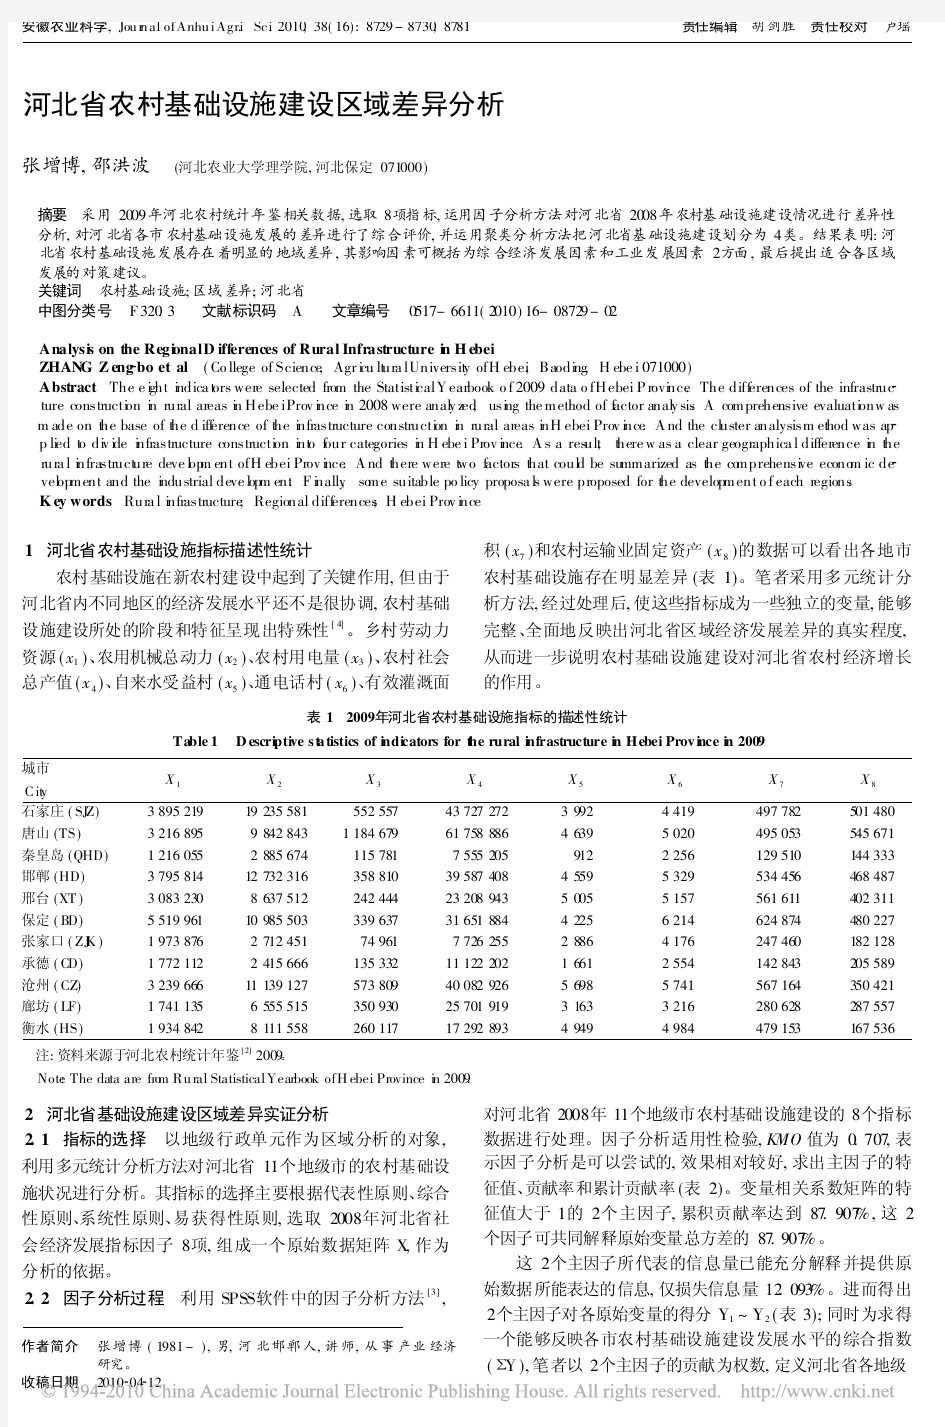 河北省农村基础设施建设区域差异分析